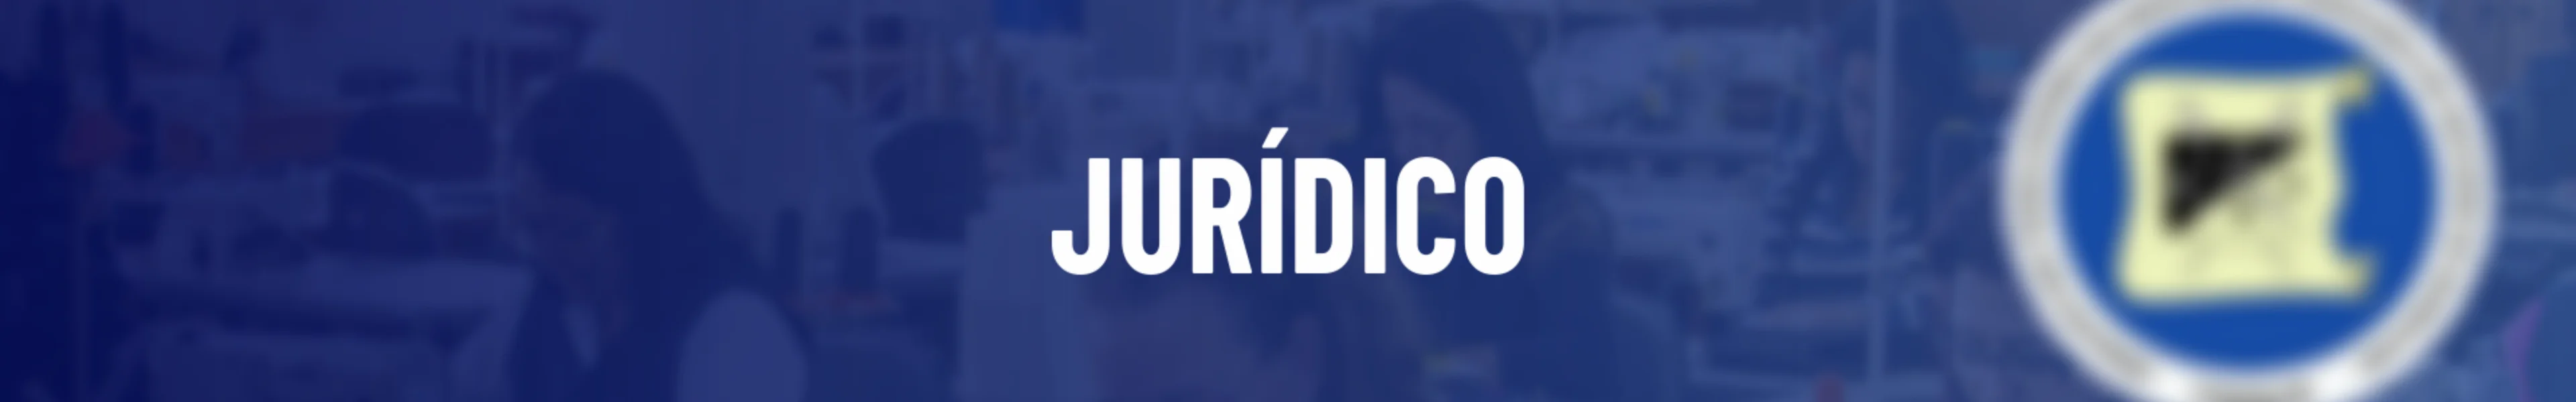 Tema Jurídico no Sindicato dos Trabalhadores nas Indústrias de Confecção e de Vestuário de Guarulhos